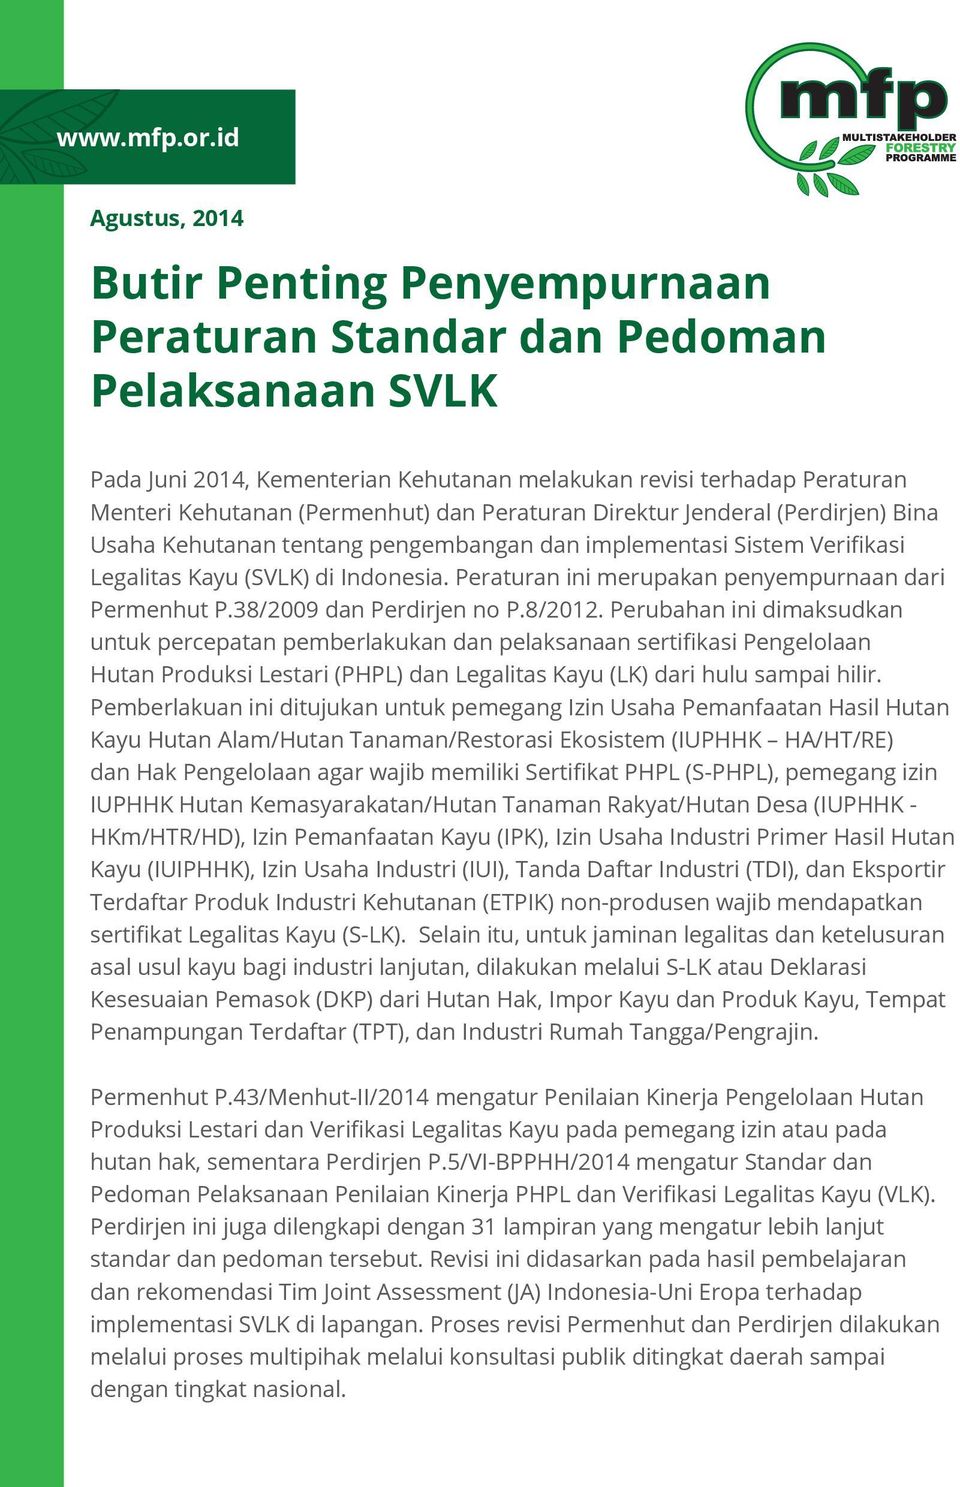 Peraturan Direktur Jenderal (Perdirjen) Bina Usaha Kehutanan tentang pengembangan dan implementasi Sistem Verifikasi Legalitas Kayu (SVLK) di Indonesia.